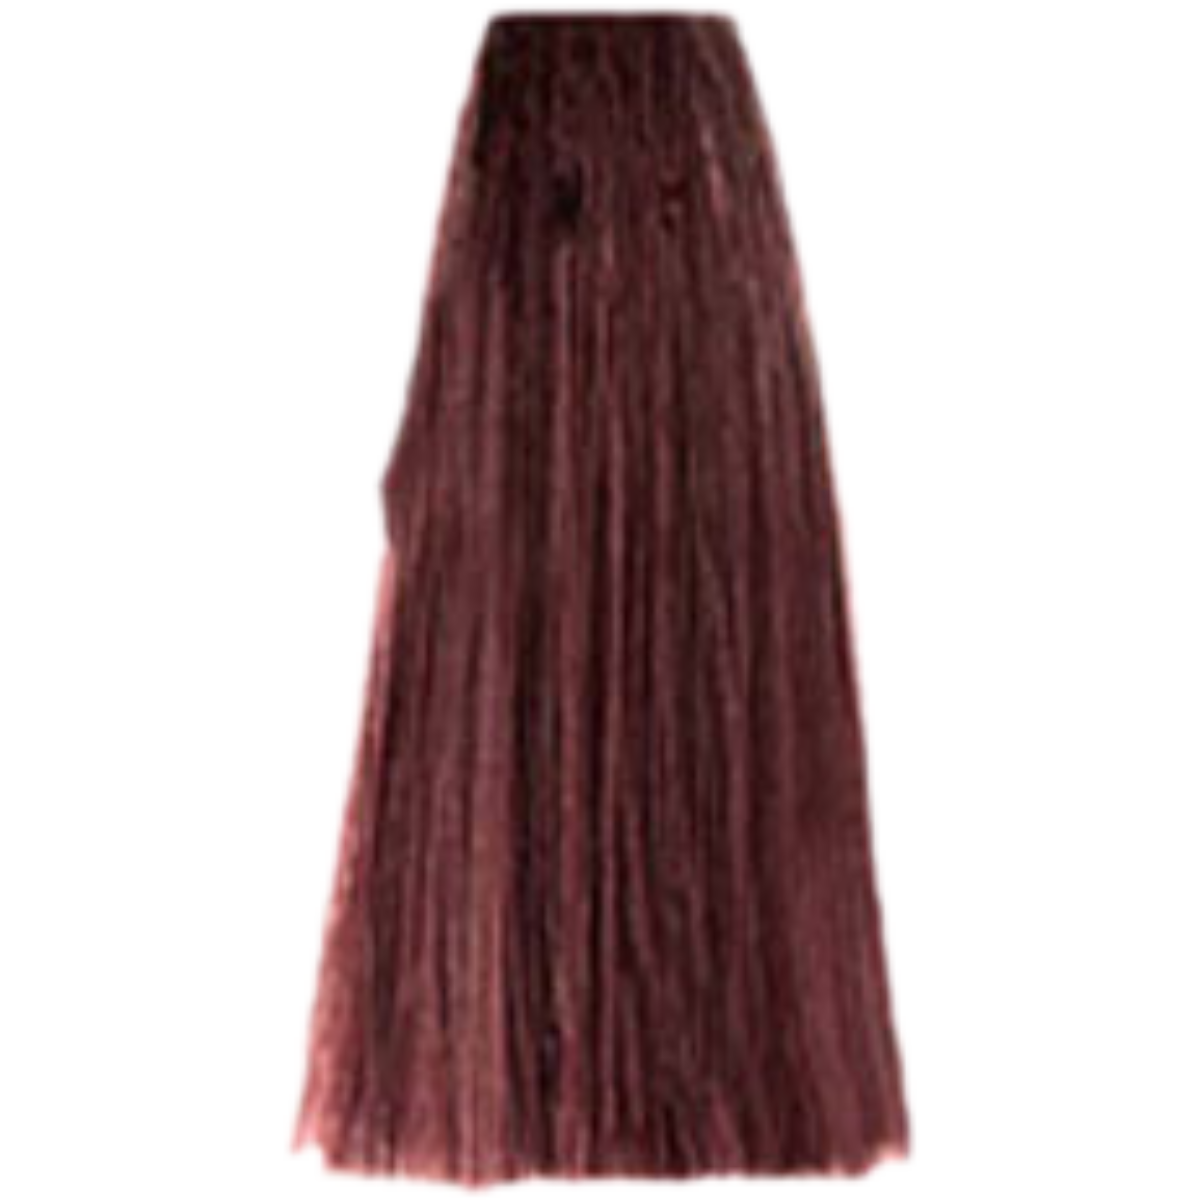 צבע שיער 5.62 LIGHT RED VIOLET BROWN פארמויטה FarmaVita צבע לשיער 100 גרם